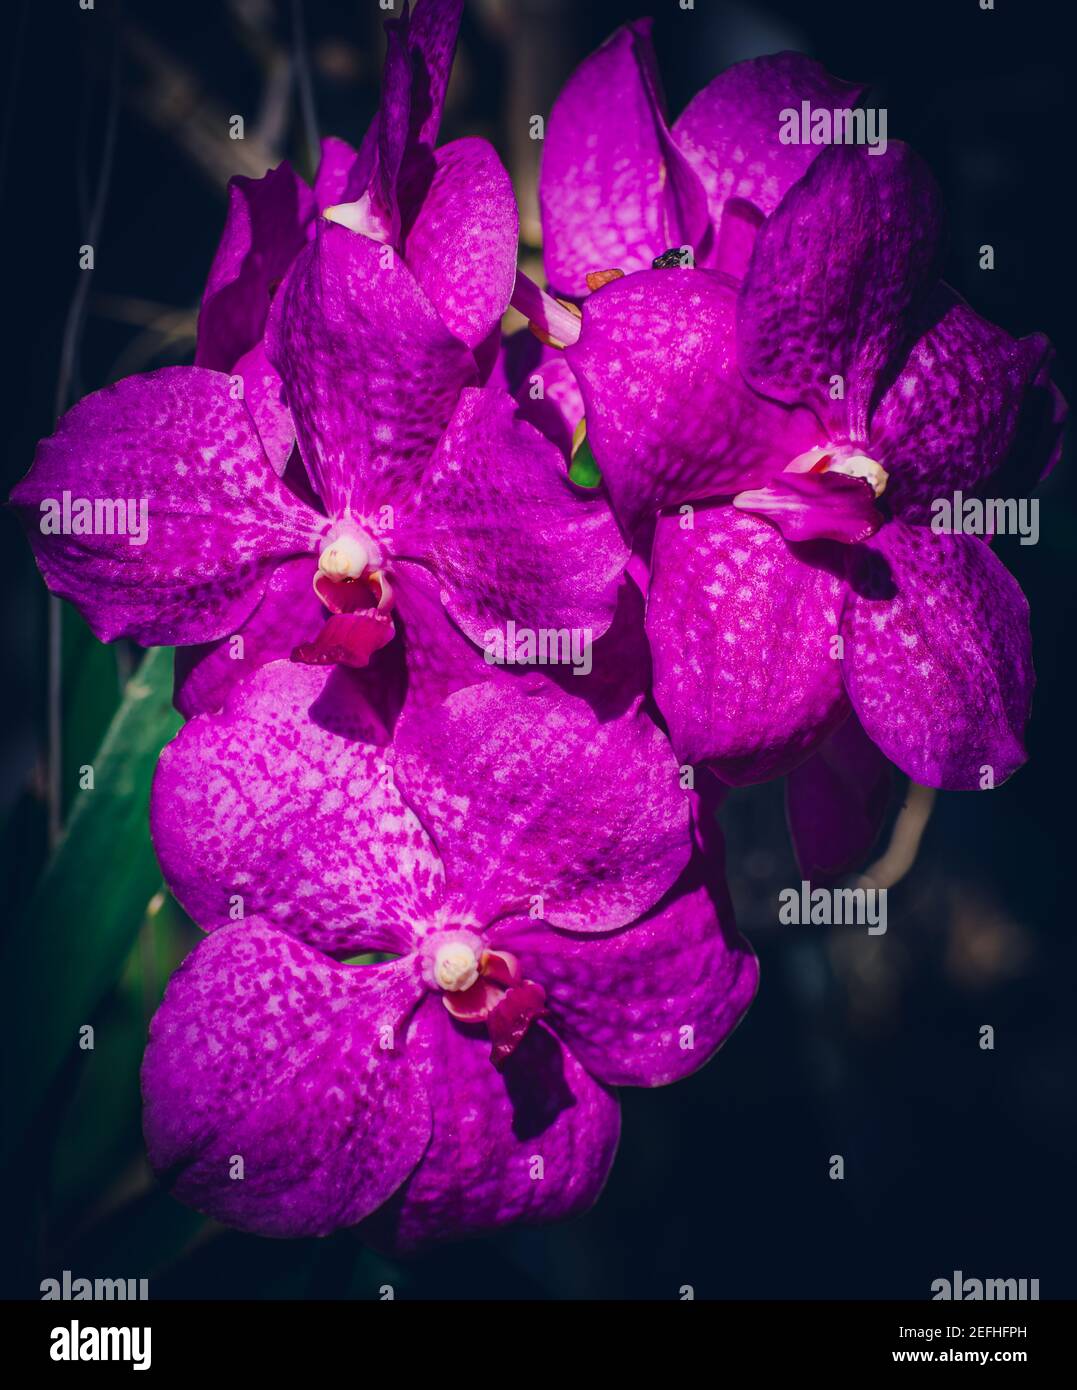 Purple orchid bouquet close up photograph. Stock Photo